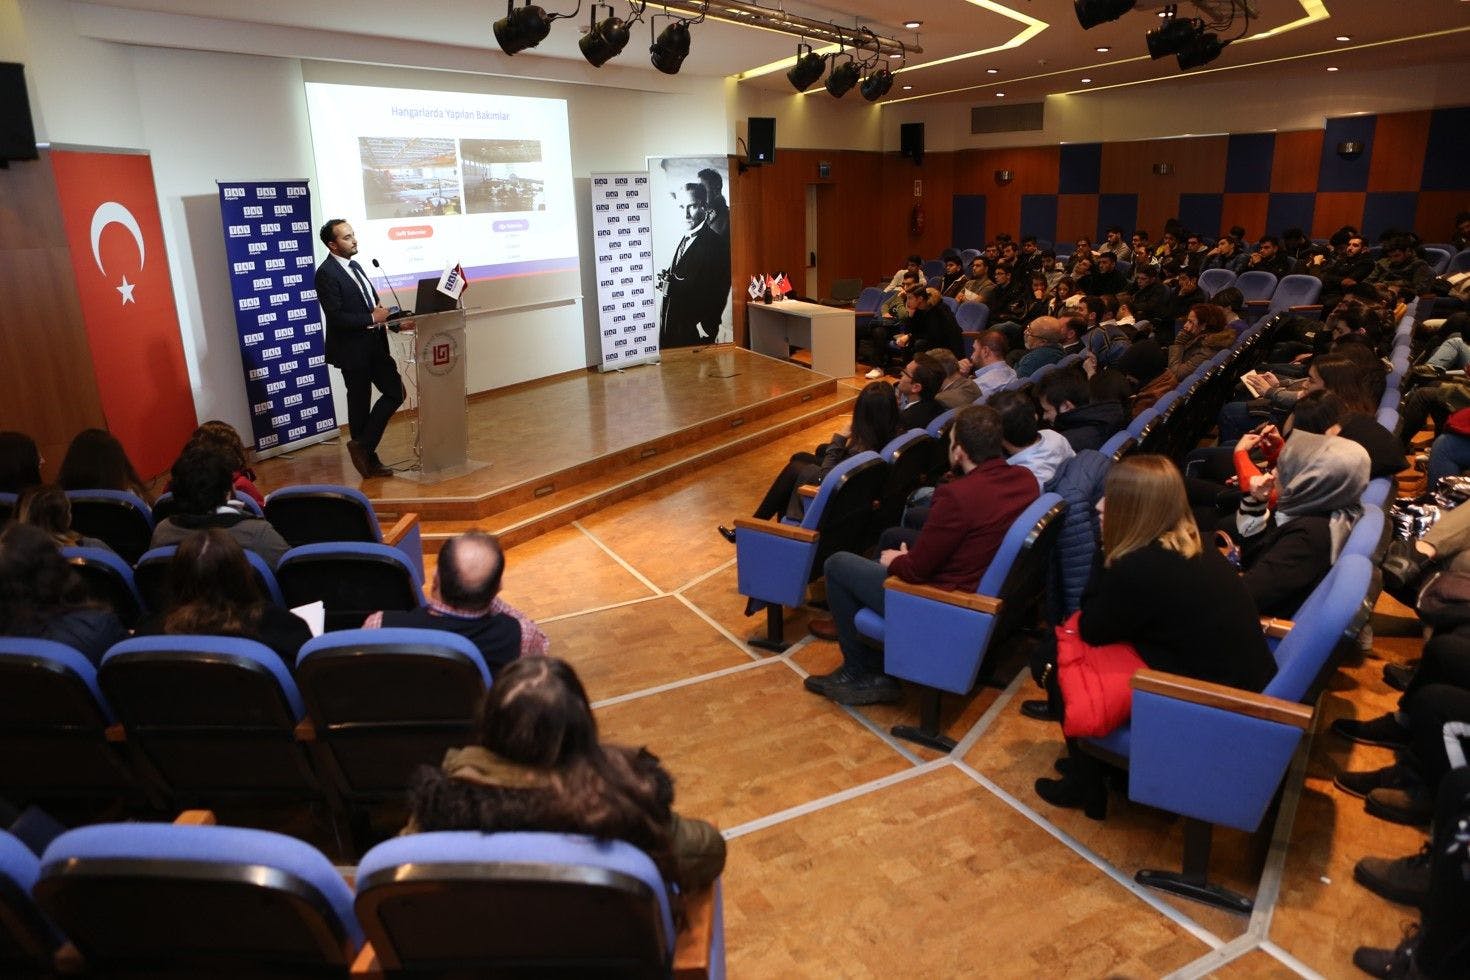 Beykoz University Programs - Ranking & Tuition Fees   جامعة بيكوز في اسطنبول - رسوم التخصصات  - ترتيب الجامعة  